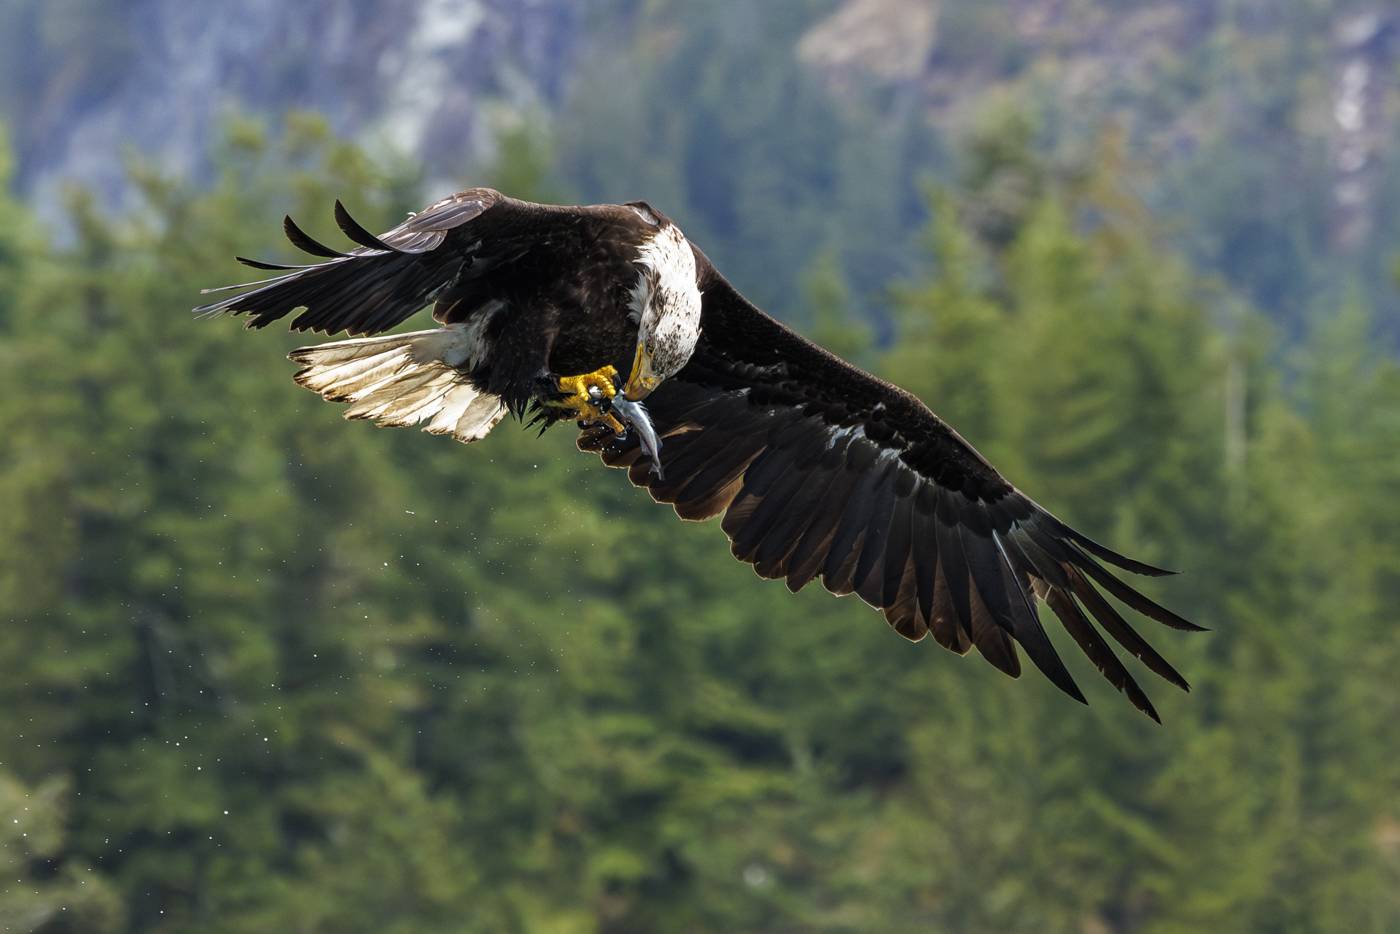 Bald eagle eats a fish while flying.